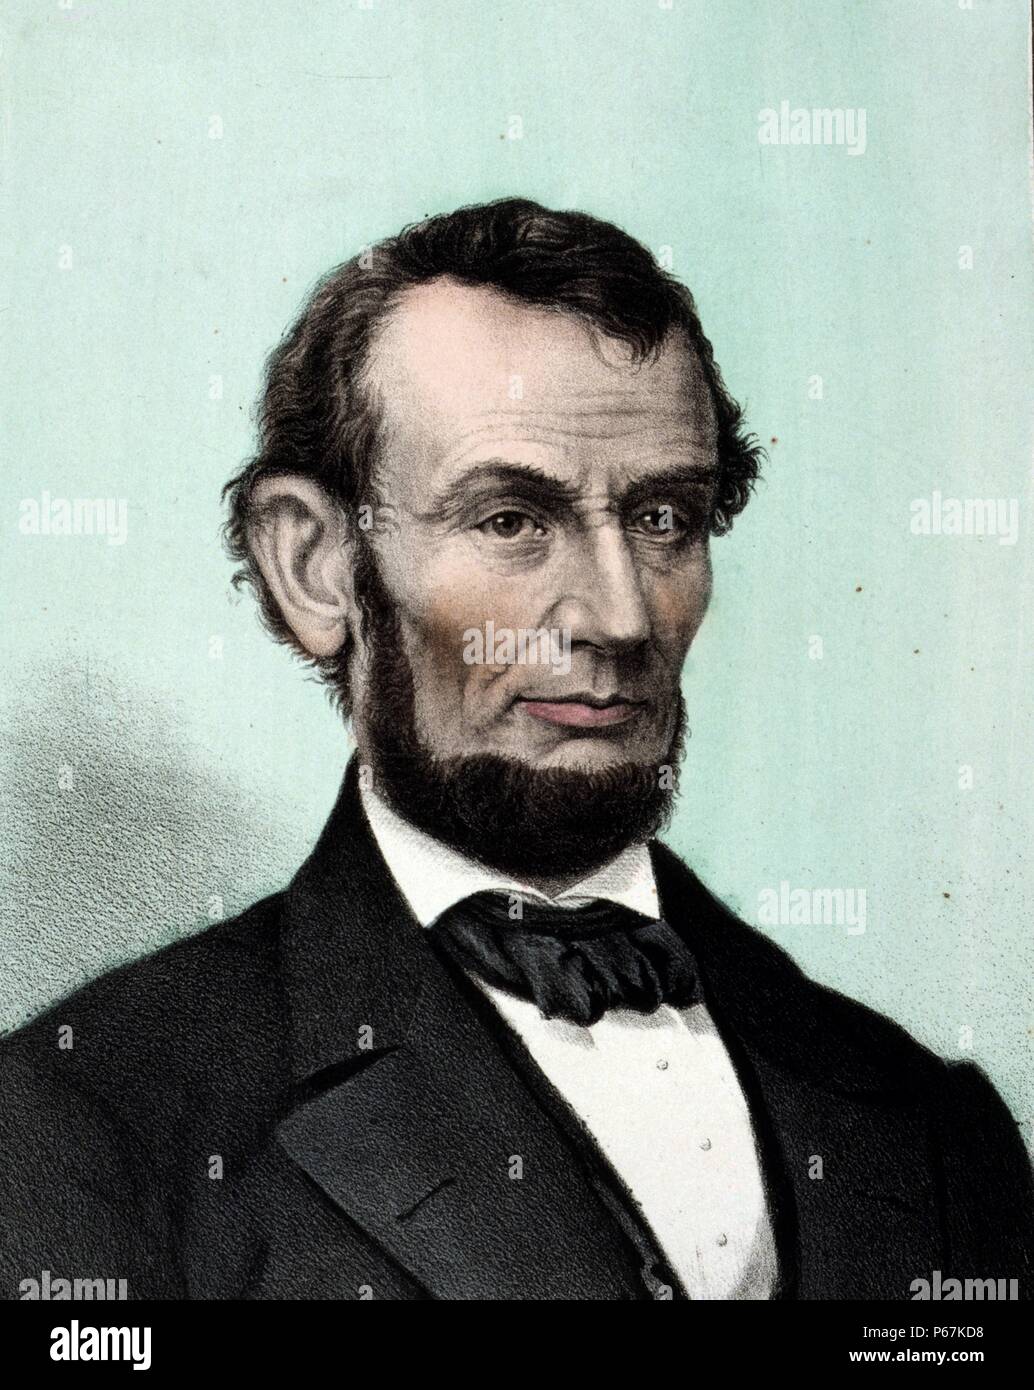 Abraham Lincoln. Lincoln war der 16. Präsident der Vereinigten Staaten, von März 1861 bis zu seiner Ermordung im April 1865. Er führte die Vereinigten Staaten durch den Bürgerkrieg und die Abschaffung der Sklaverei und die Wirtschaft in den Prozess modernisiert. Stockfoto